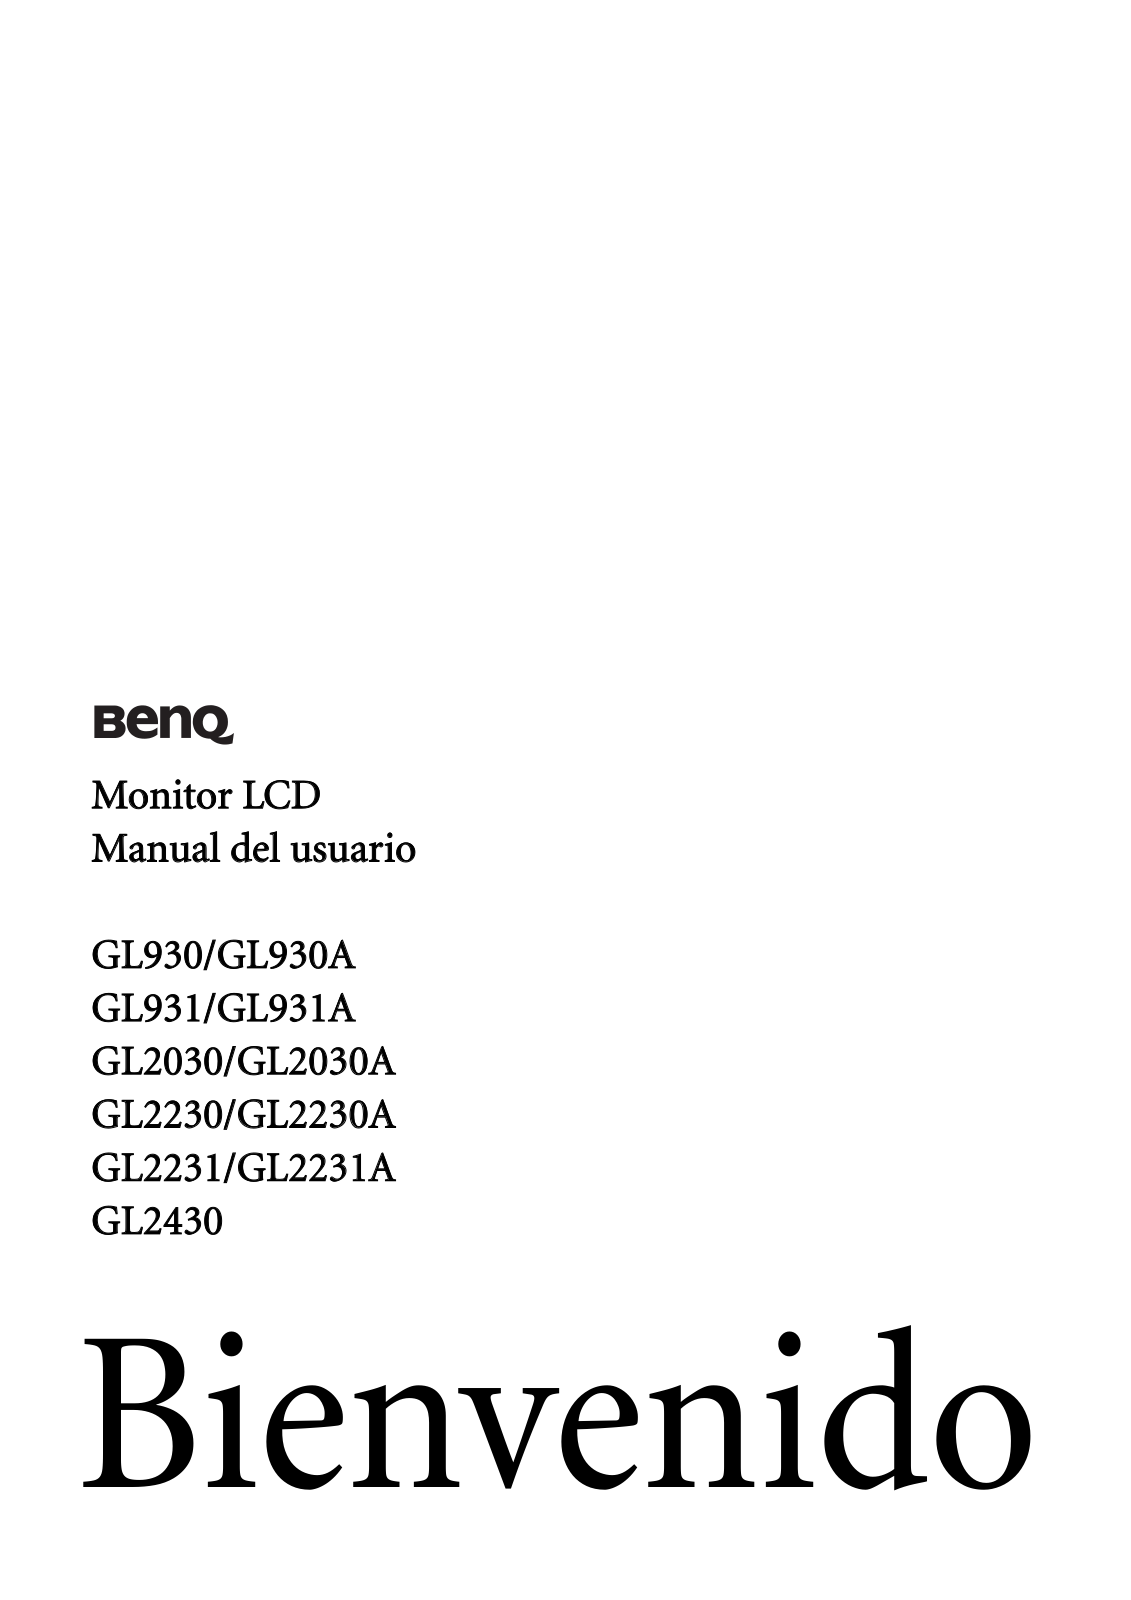 Benq GL930, GL930A, GL931, GL931A, GL2030 User Manual